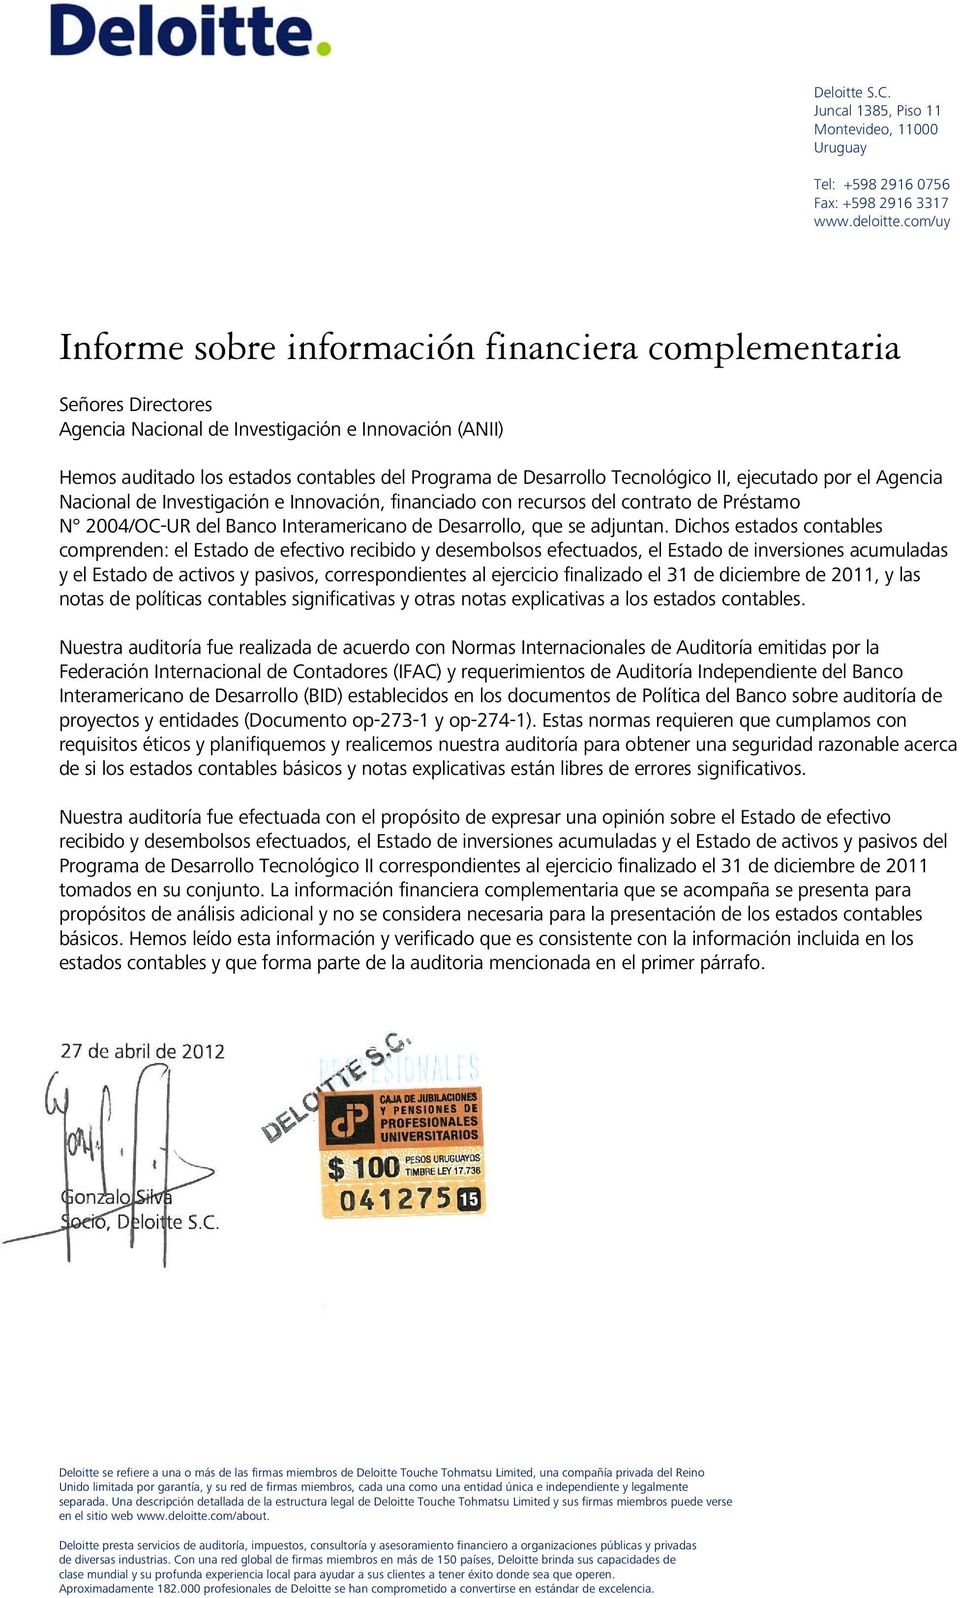 Tecnológico II, ejecutado por el Agencia Nacional de Investigación e Innovación, financiado con recursos del contrato de Préstamo N 2004/OC-UR del Banco Interamericano de Desarrollo, que se adjuntan.